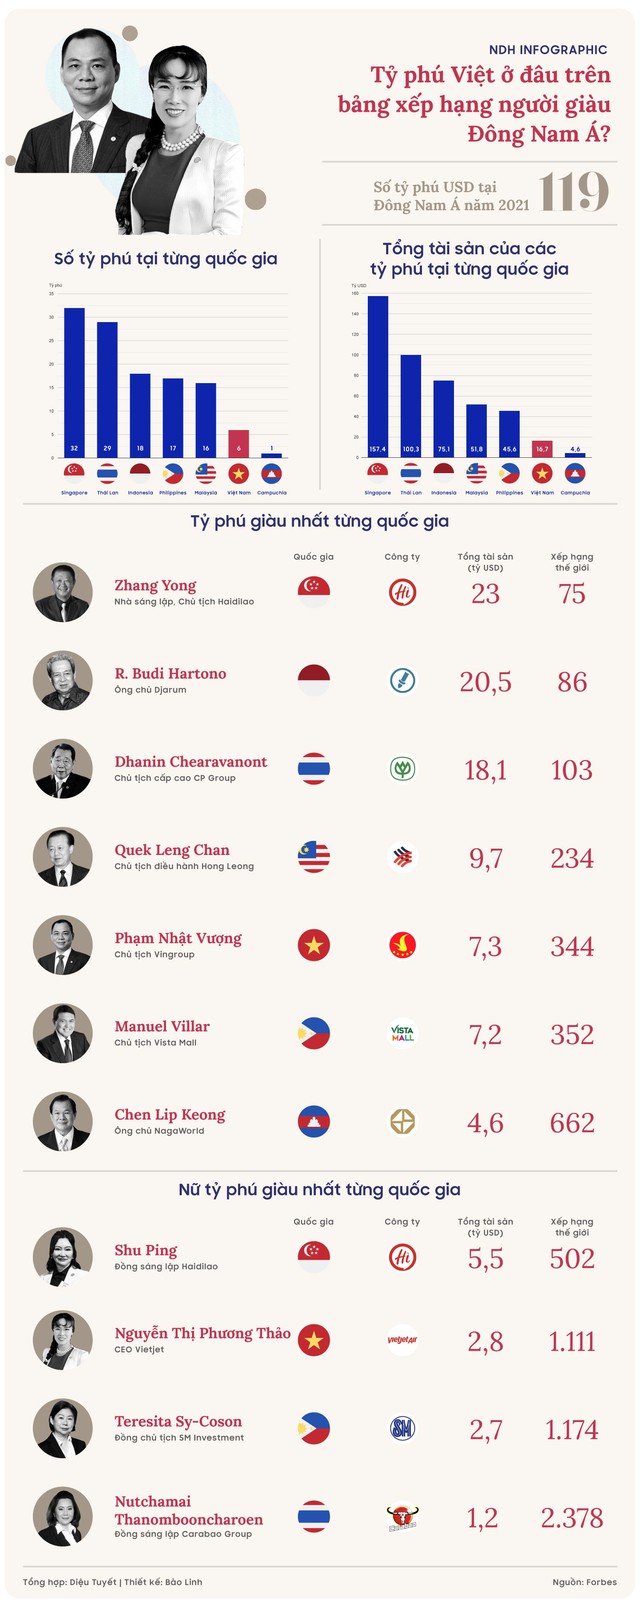 Tỷ phú Việt ở đâu trên bảng xếp hạng người giàu Đông Nam Á - Ảnh 1.